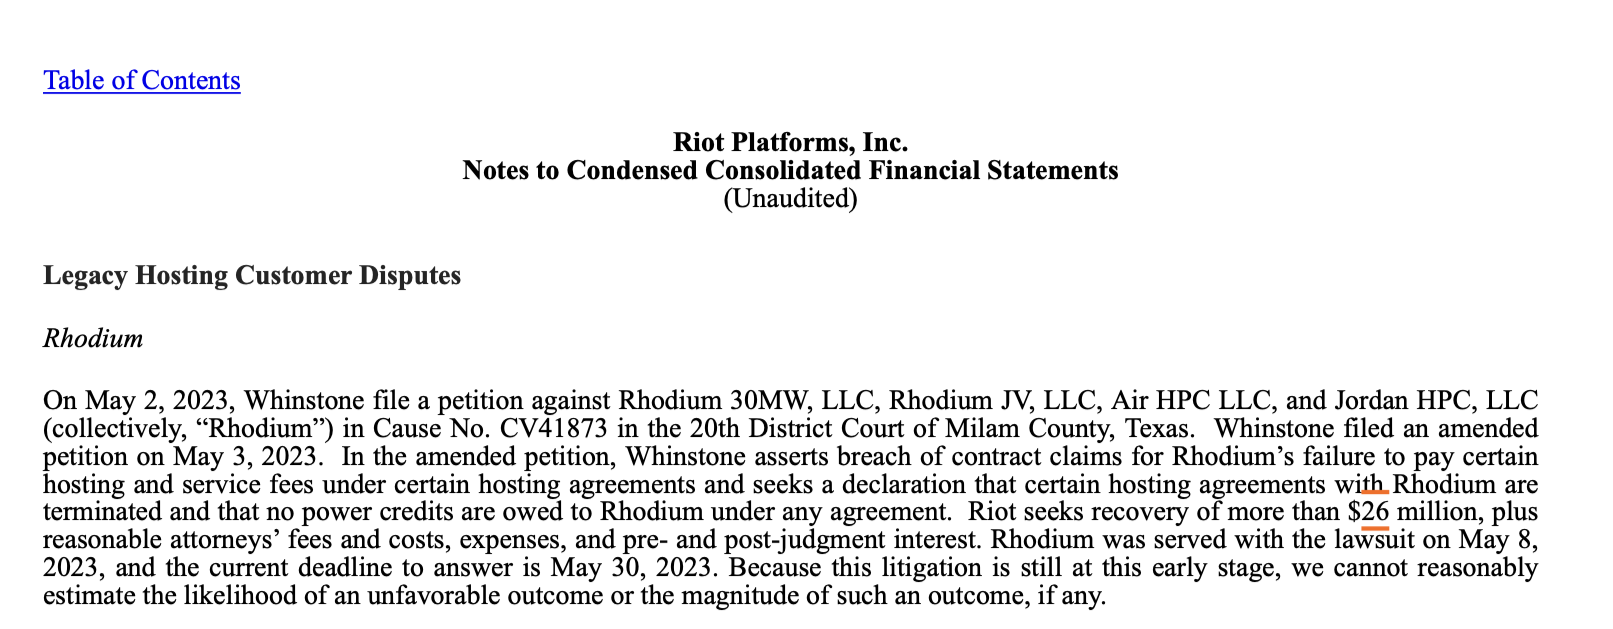 Майнер BTC Rhodium зіткнувся з позовом через несплачену комісію в розмірі 26 мільйонів доларів США: звіт